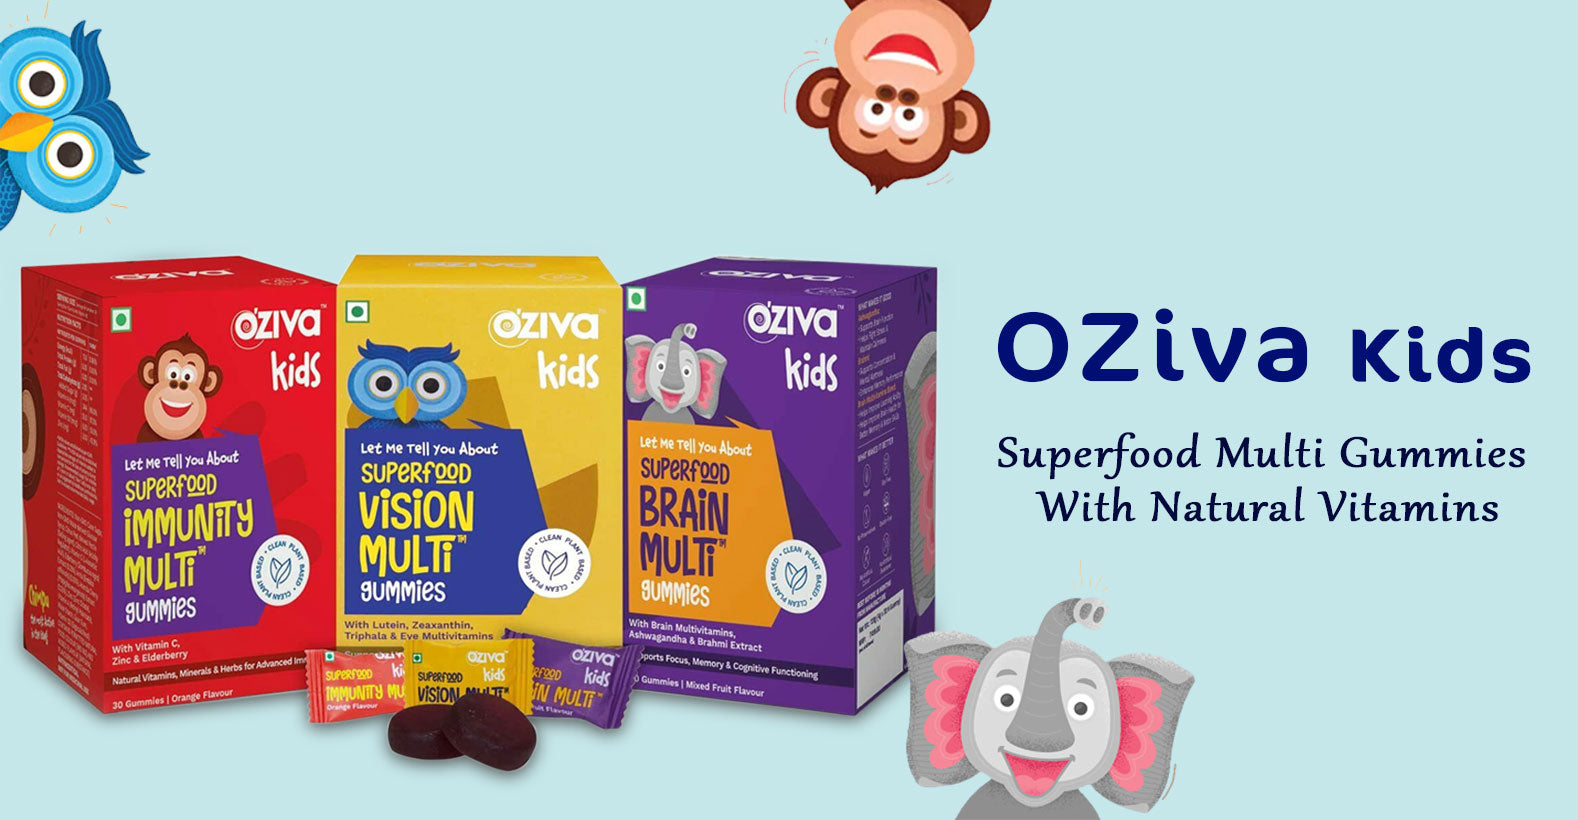 OZiva Kids Superfood Gummies